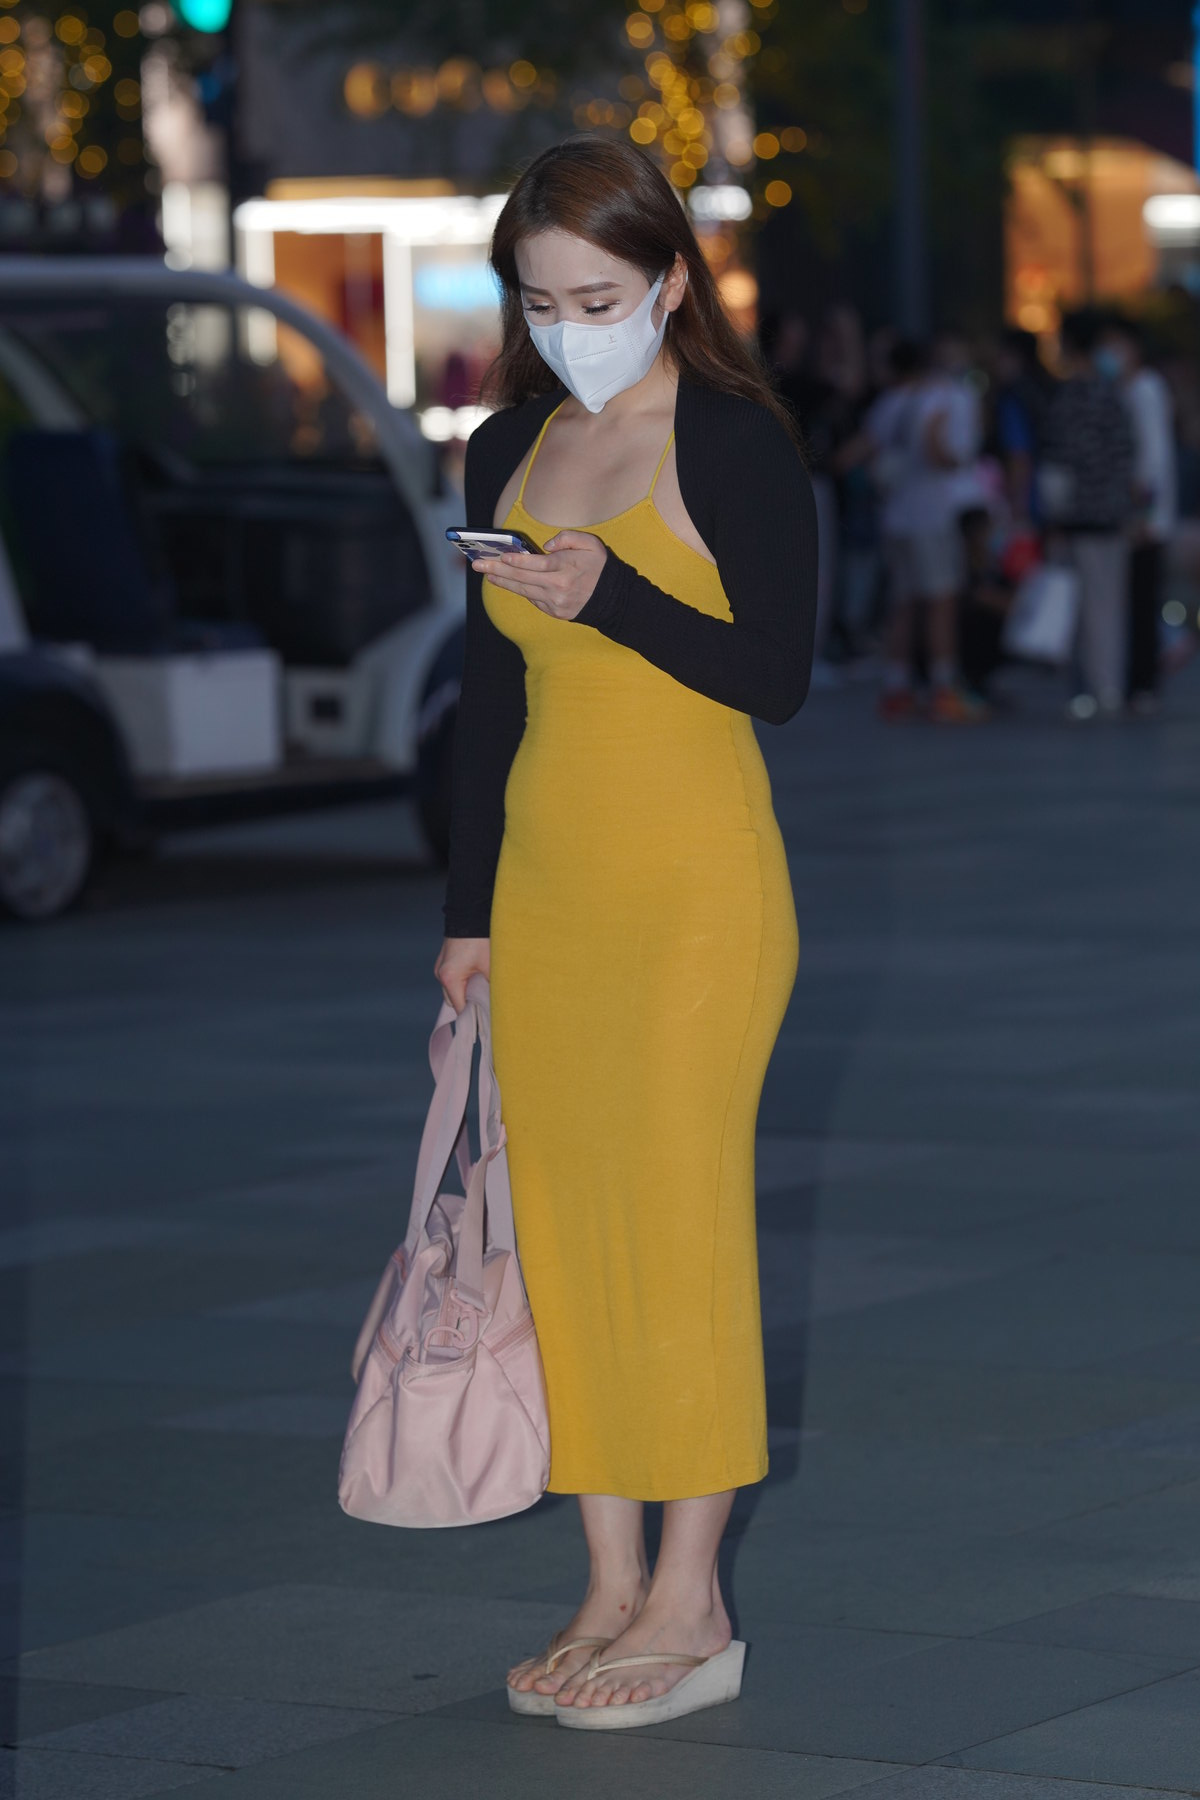 都市丽人黄色包臀裙美女【87P-1.31G】